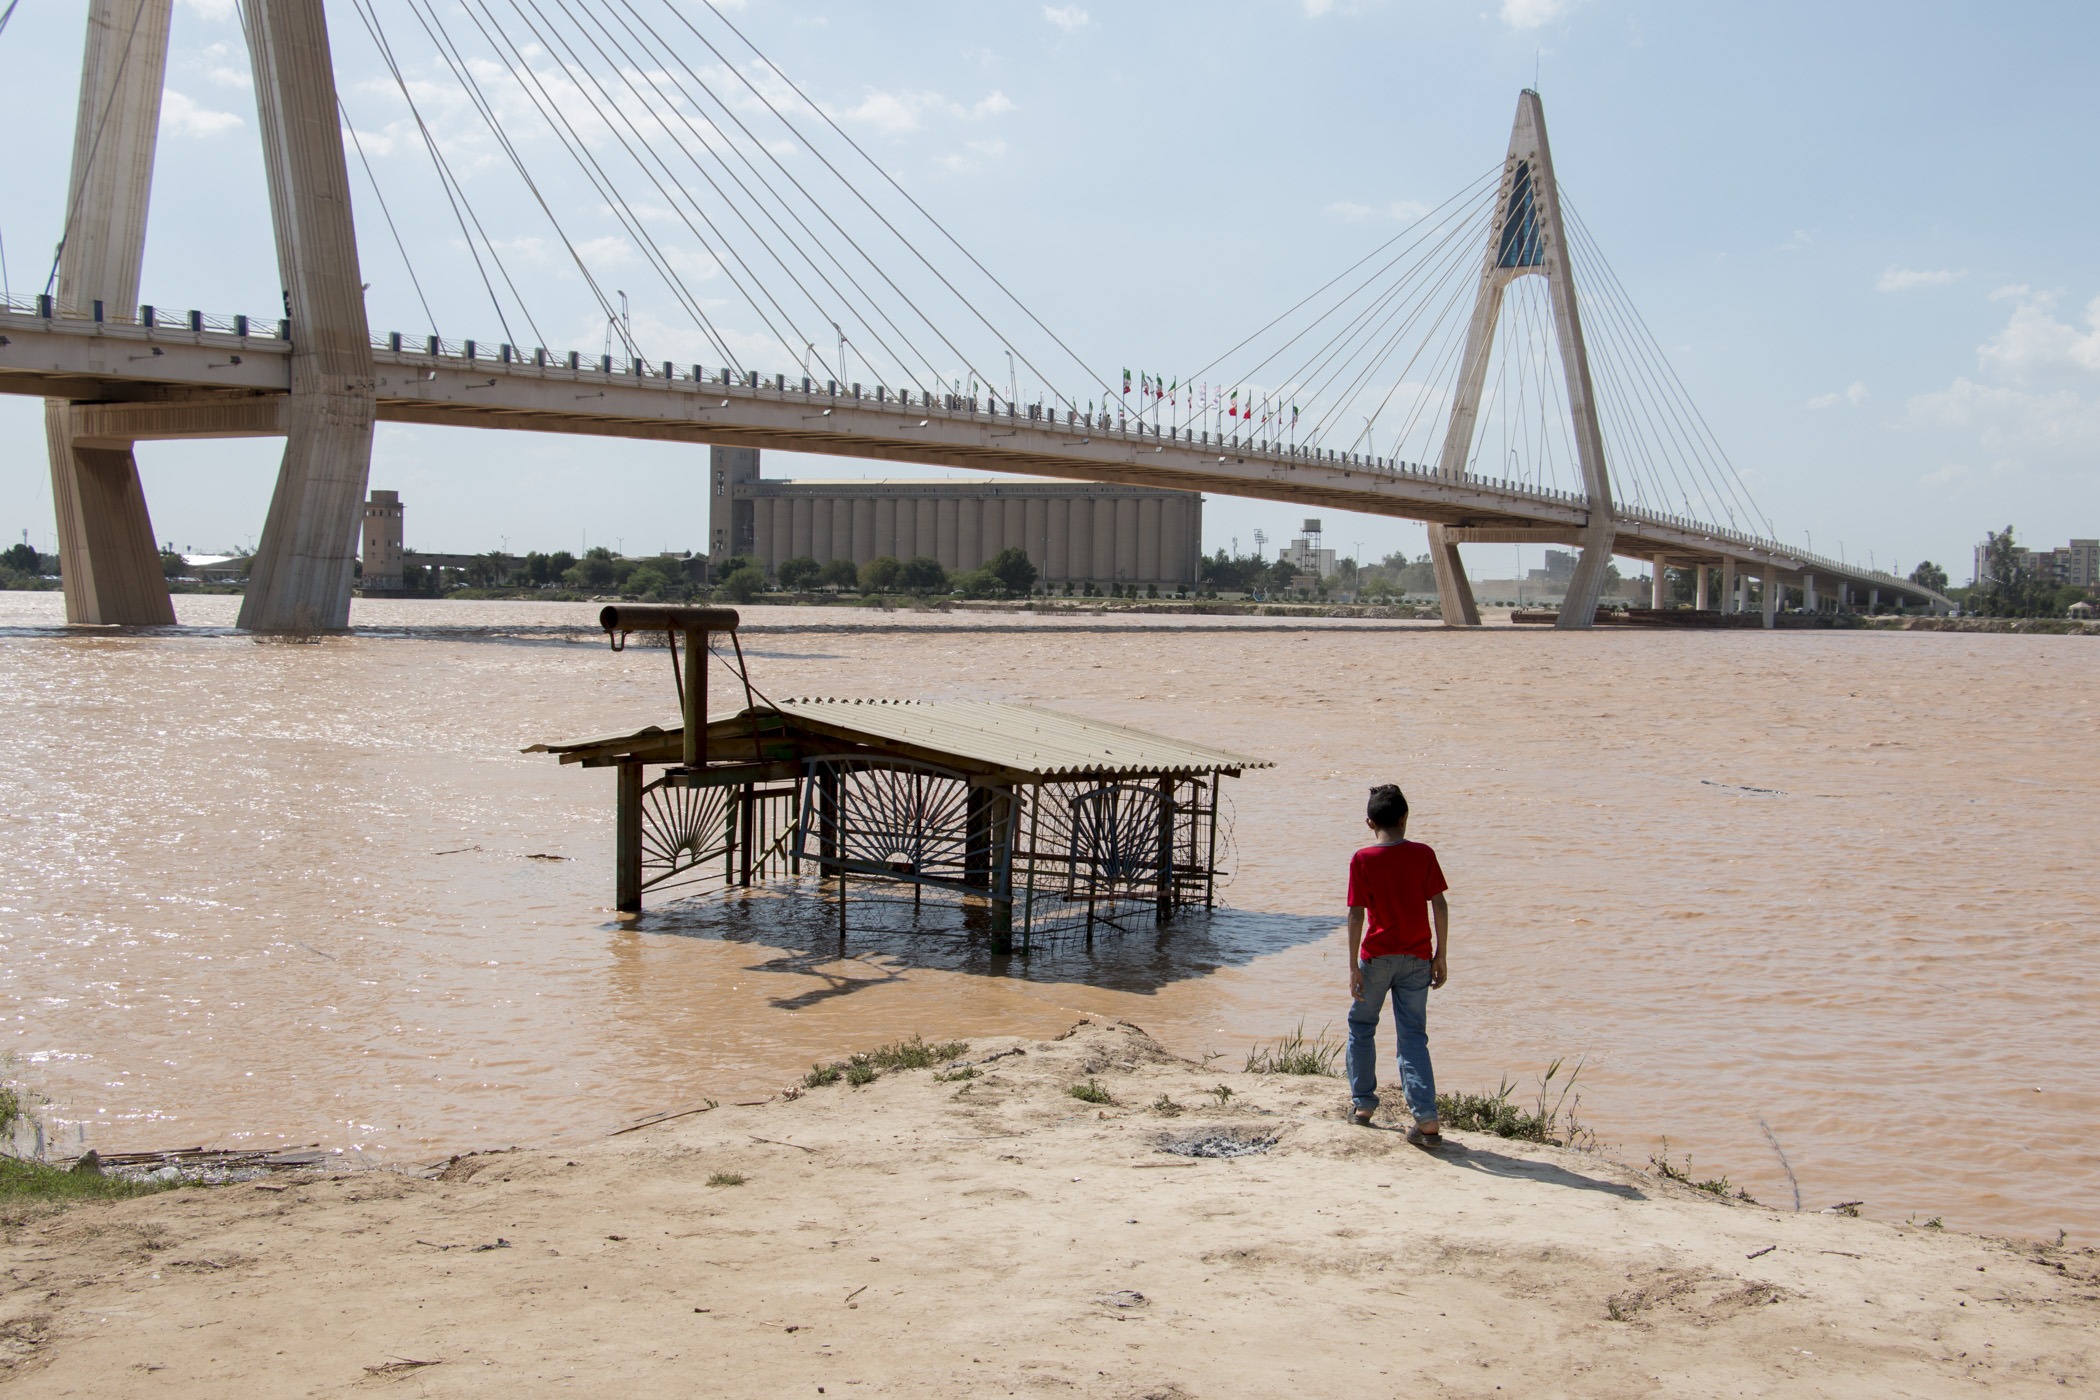 سازمان آب و برق خوزستان متهم اصلی سیل اخیر/ عدم لایروبی رودخانه ها و عدم رهاسازی آب در تابستان دلیل خسارت سنگین به استان